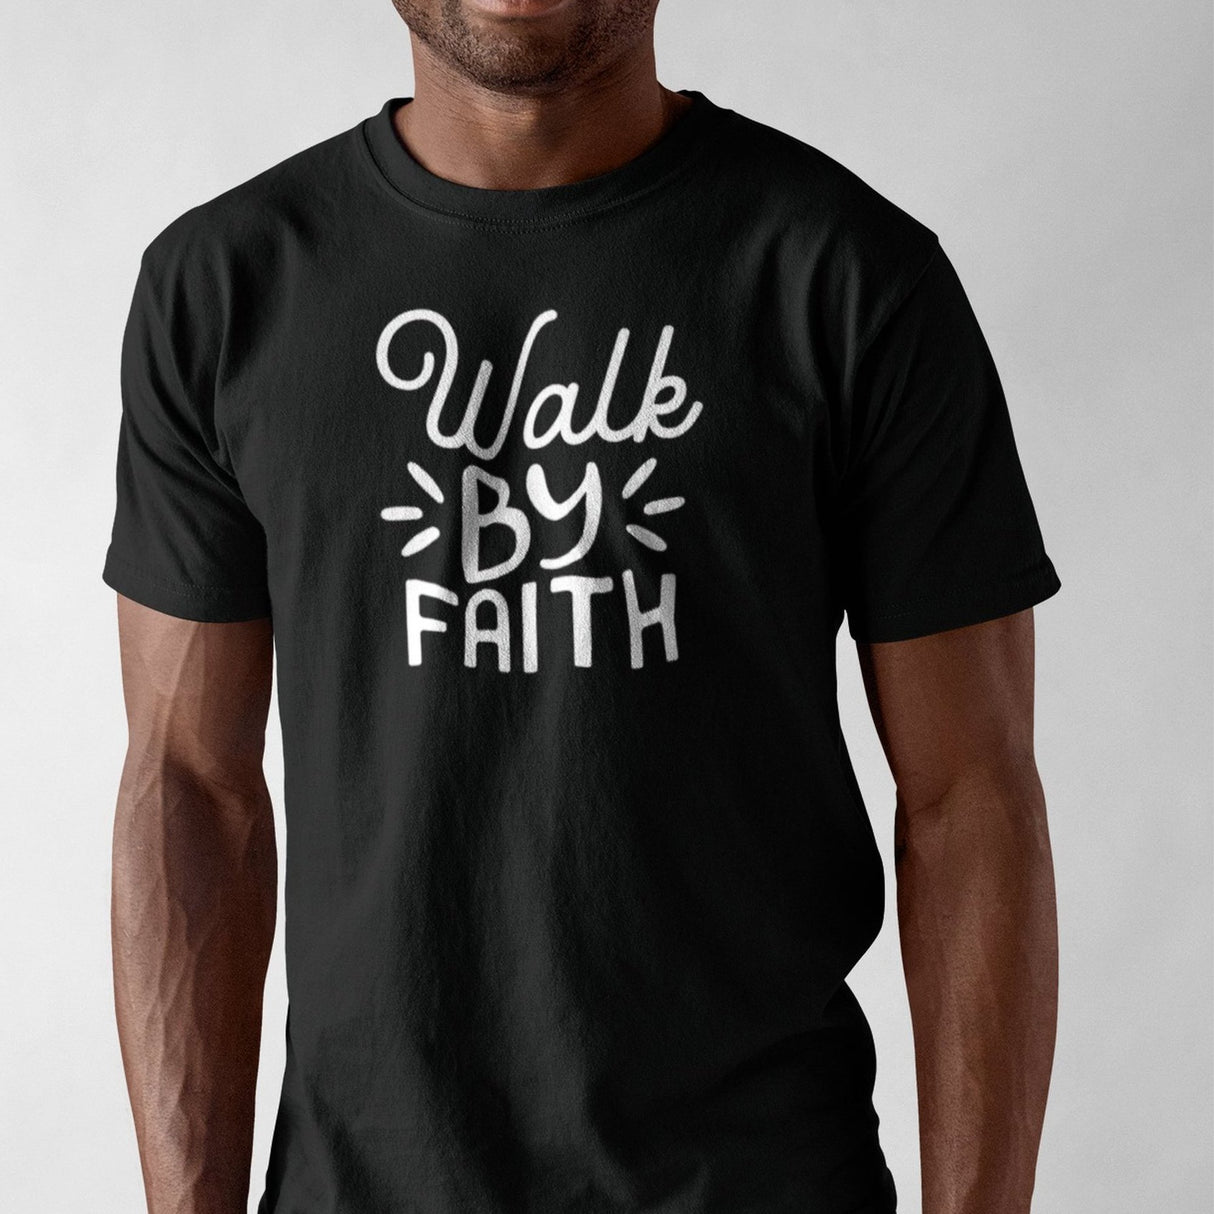 walk-the-faith-christian-tee-faith-t-shirt-bible-tee-jesus-t-shirt-religion-tee#color_black